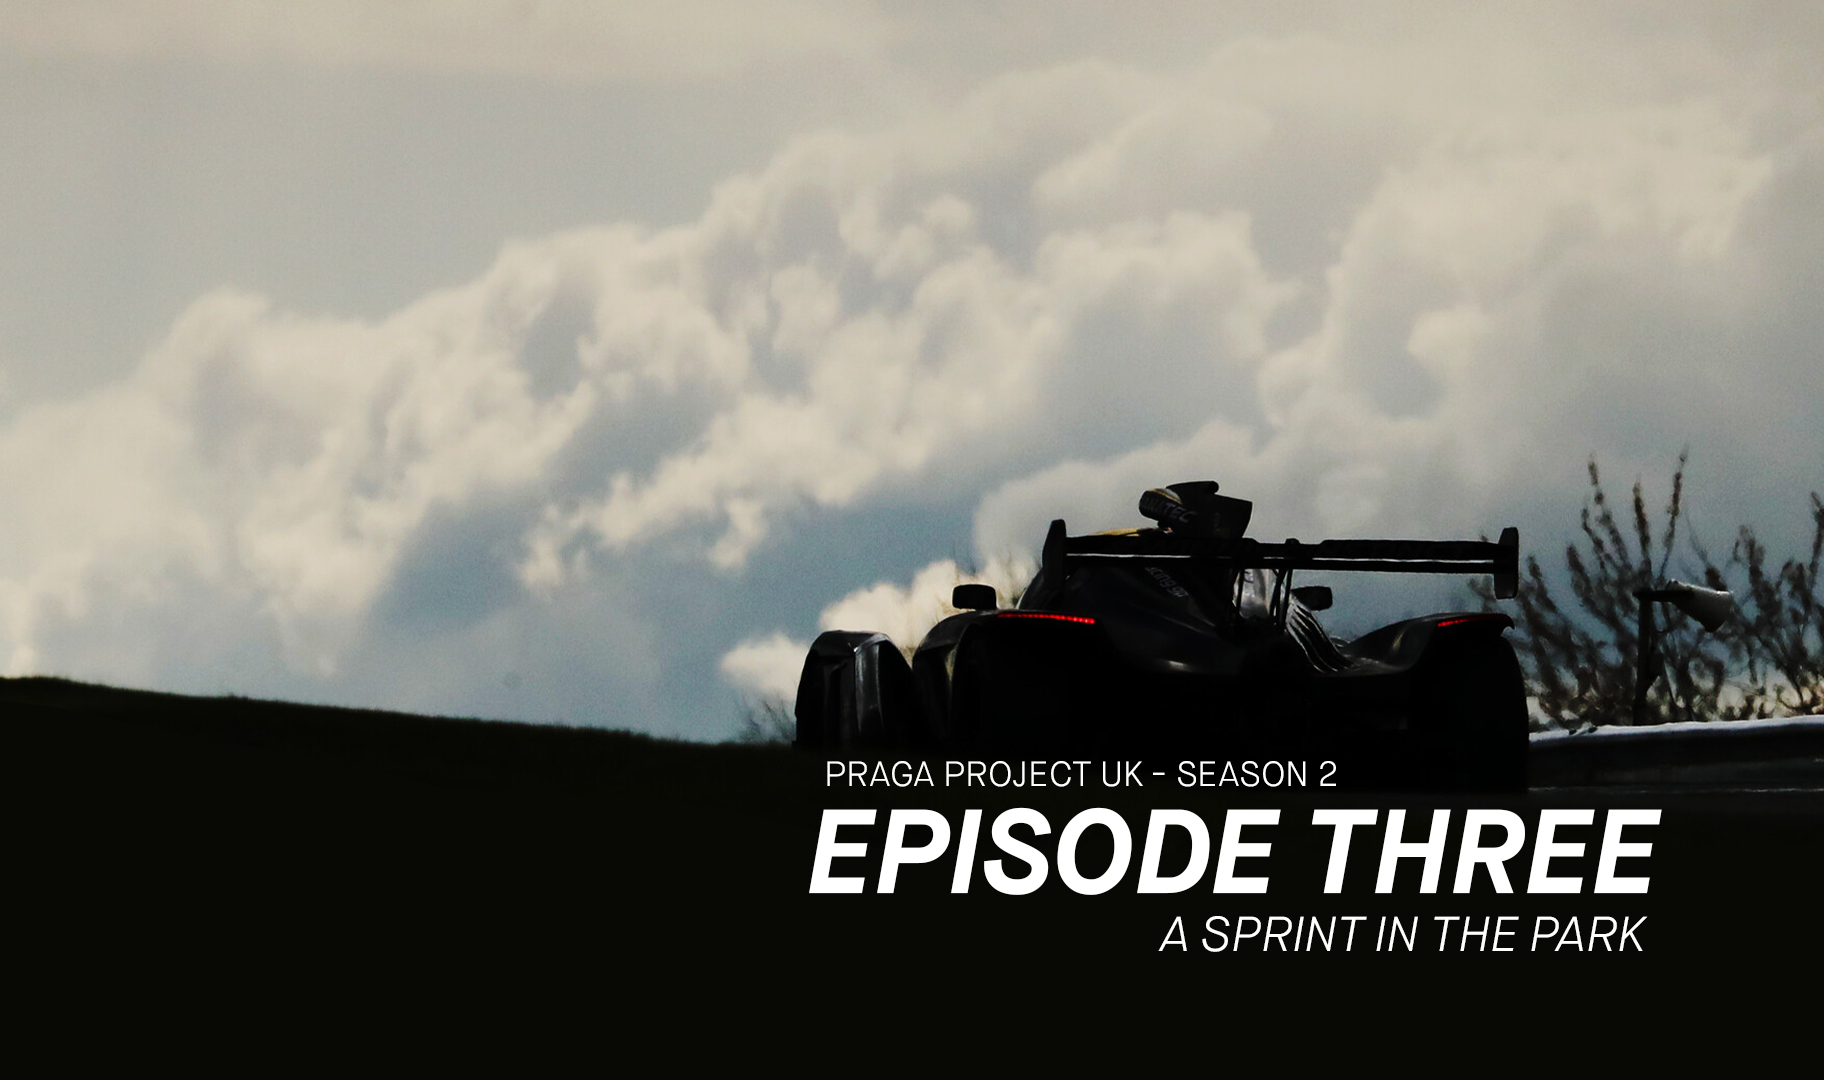 Season 2, Episode 3 - A Sprint in the Park